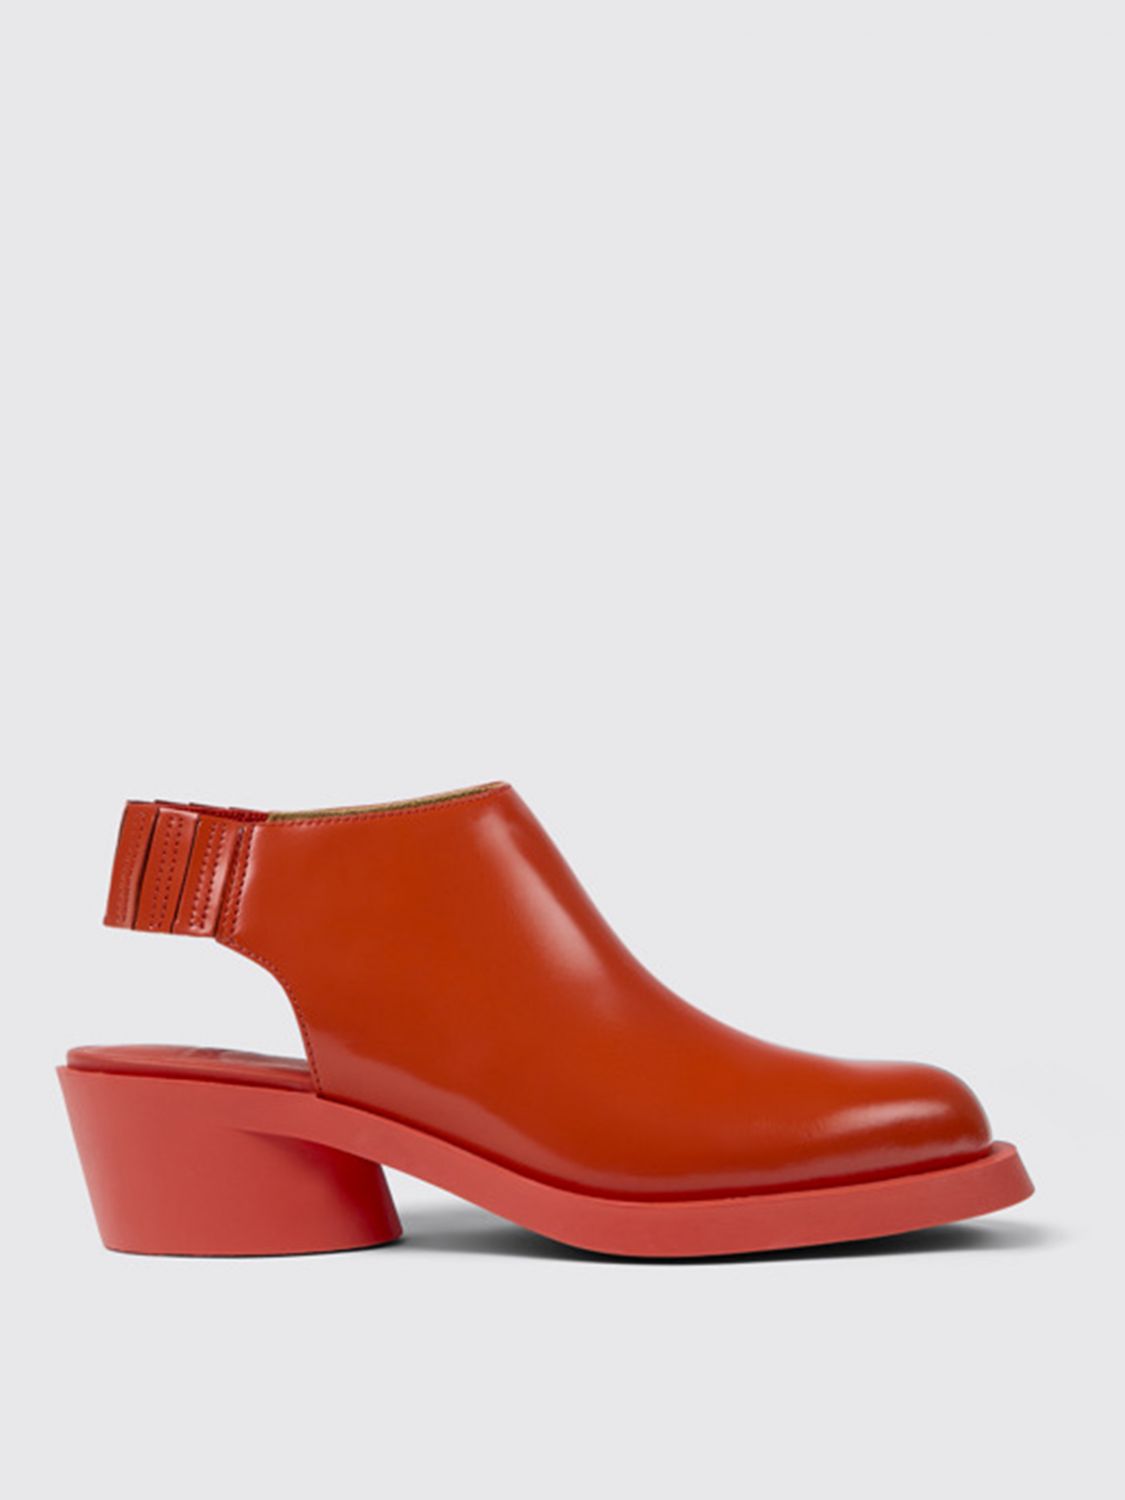 impulso Burro Bolsa CAMPER: Zapatos de tacón para mujer, Rojo | Zapatos De TacÓN Camper  K201416-002 BONNIE en línea en GIGLIO.COM